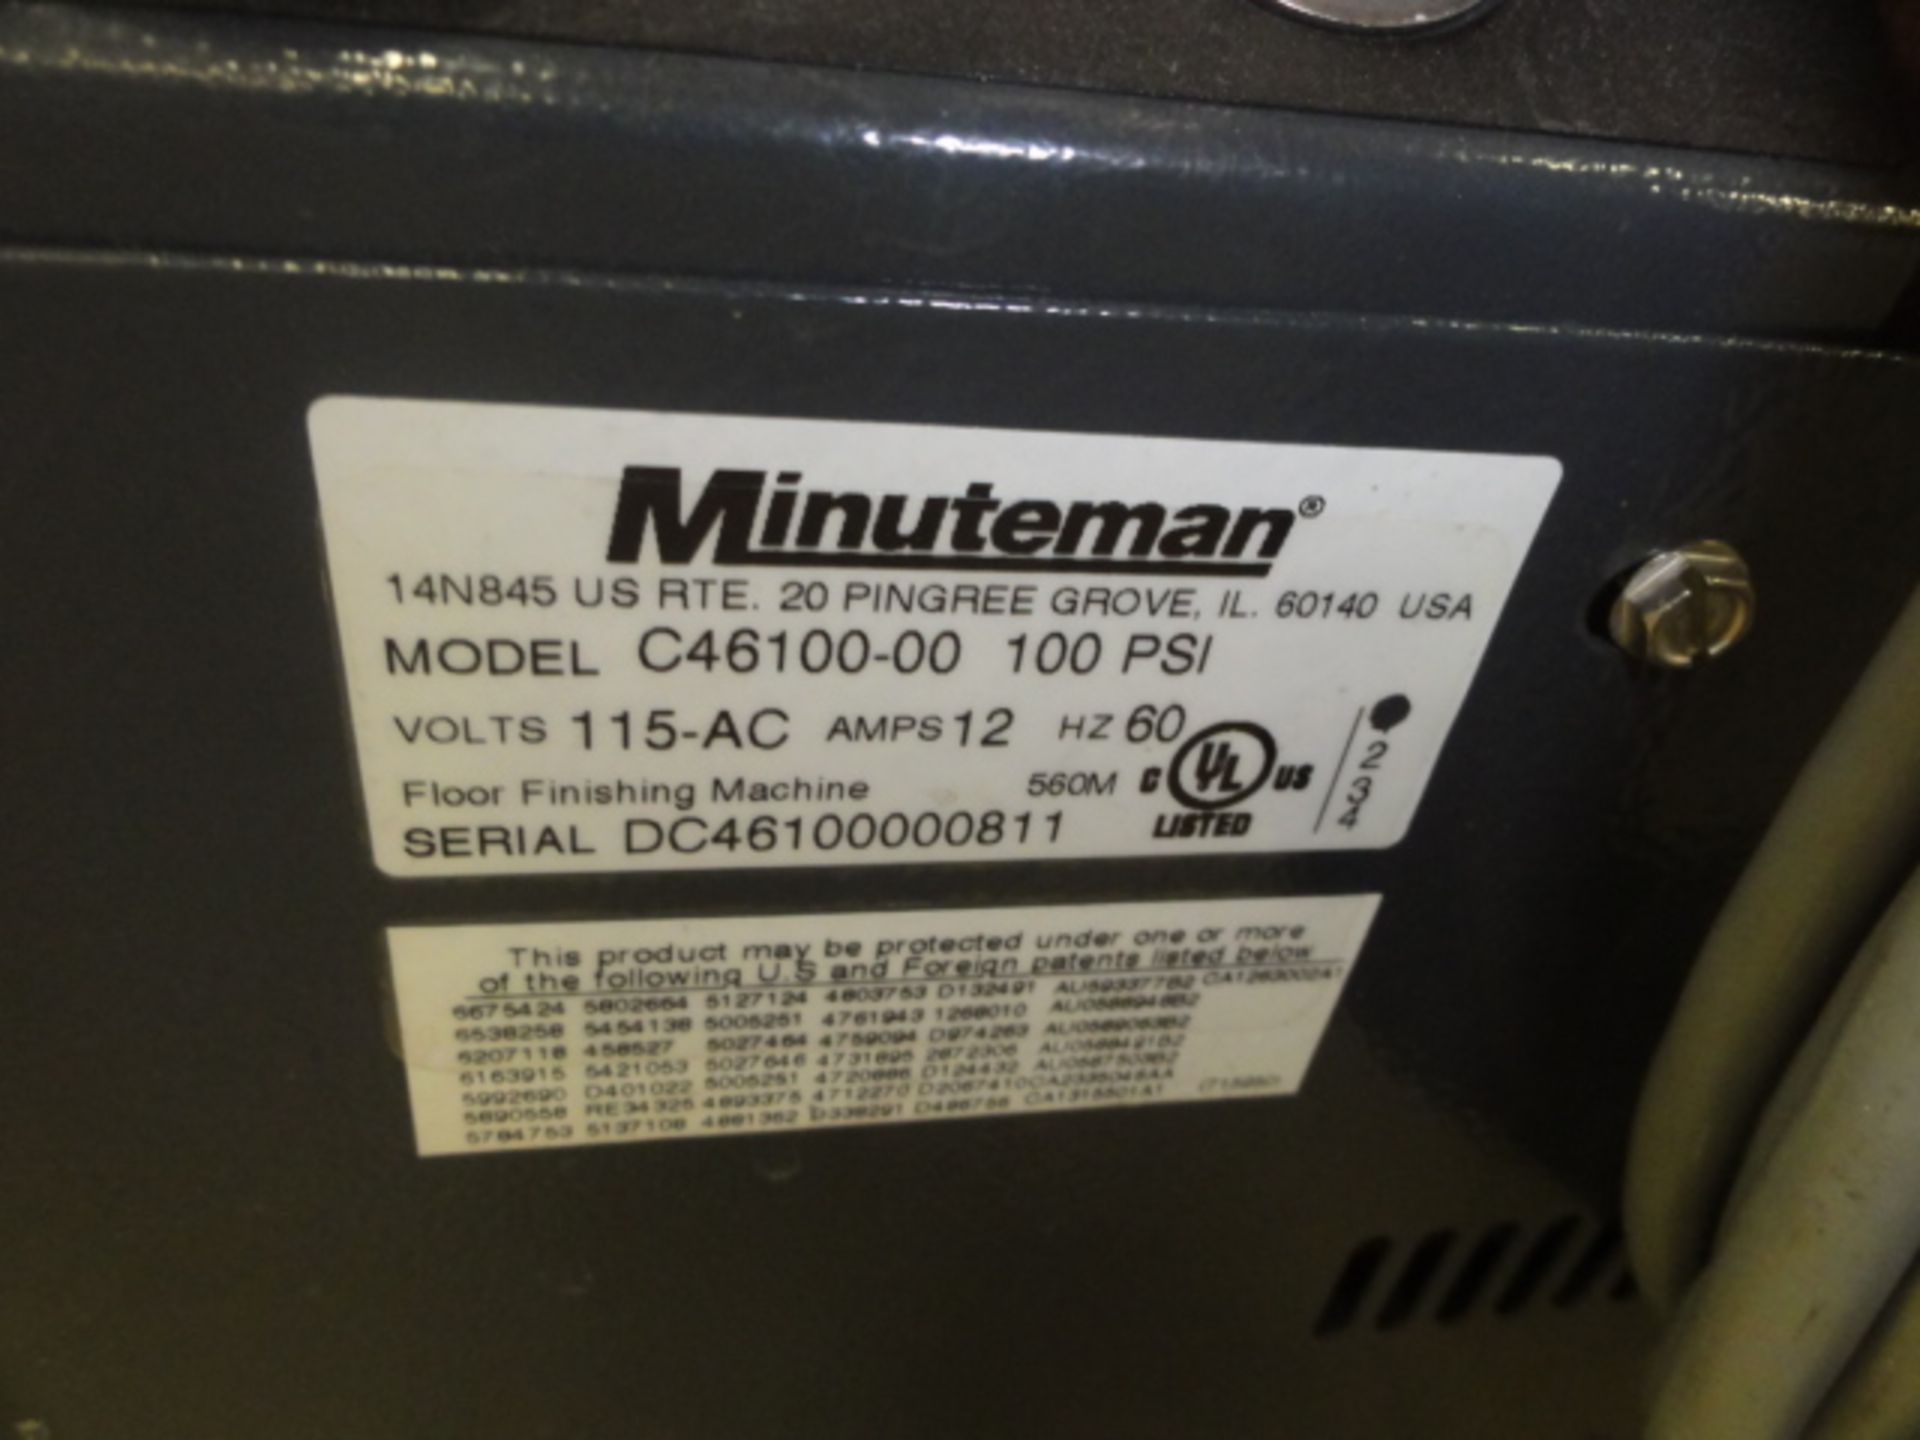 Minuteman Ambassador Model C46100-00 Carpet Washer, w/ Adjustable Brush Height, Adjustable Pressure, - Image 2 of 2